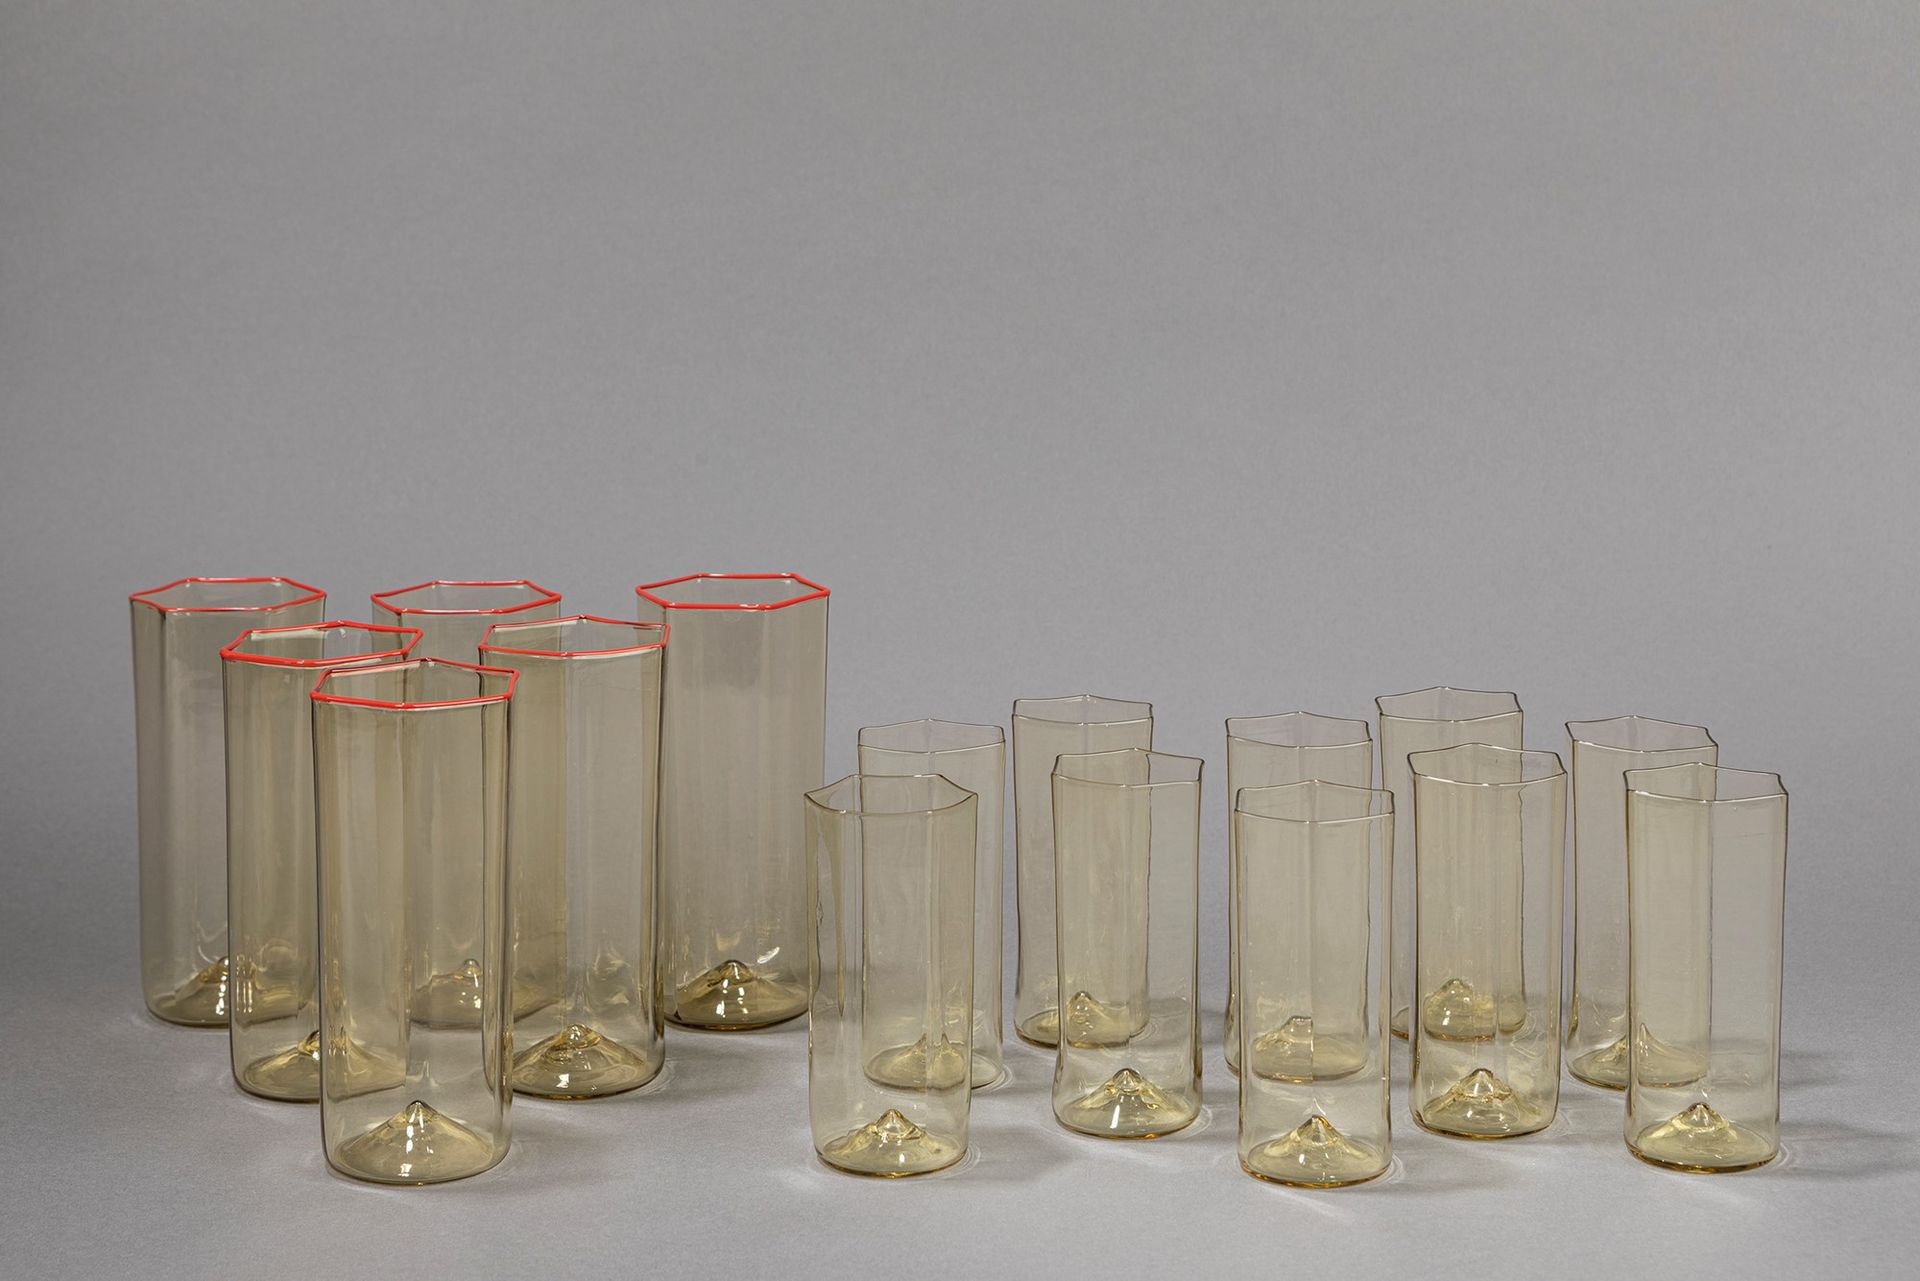 CARLO SCARPA 套装，1930年左右

h 13 x 6 cm - h 10 x 4,5 cm
由6个红色边框的吹制玻璃杯和10个黄色的吹制玻璃杯组成&hellip;